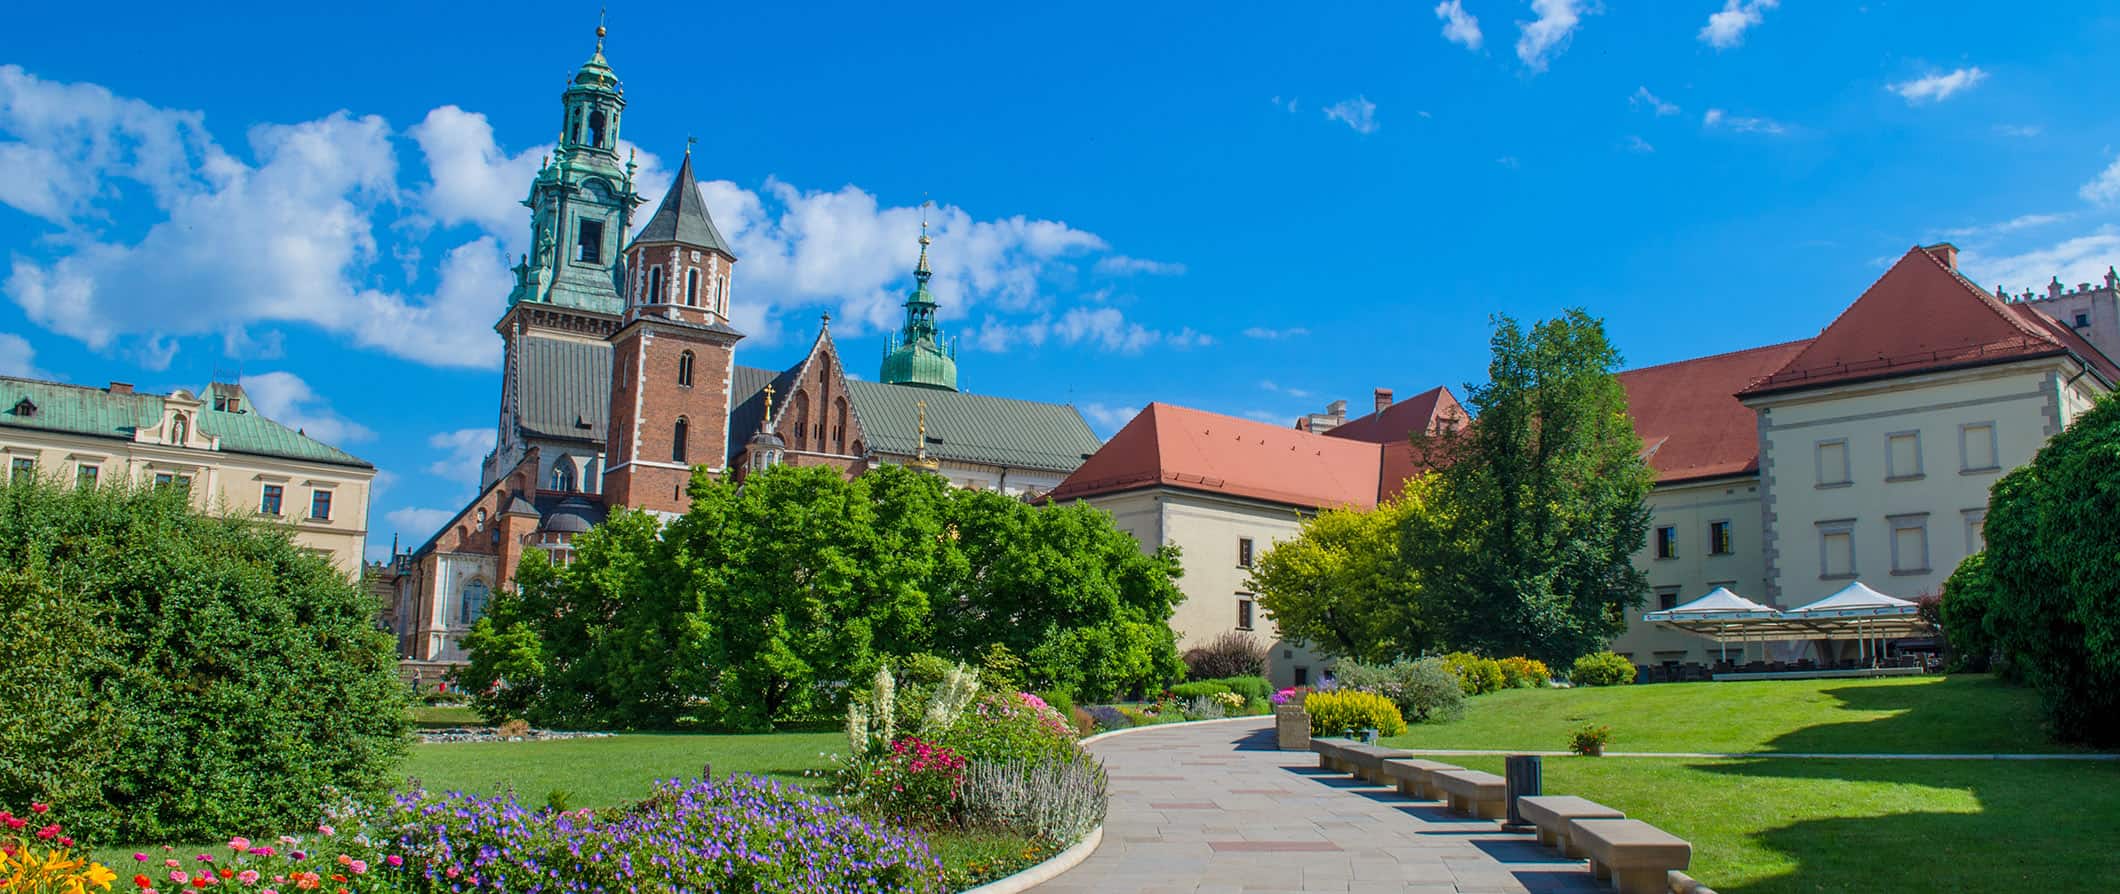 Arquitetura colorida e histórica da Polônia num dia ensolarado de verão